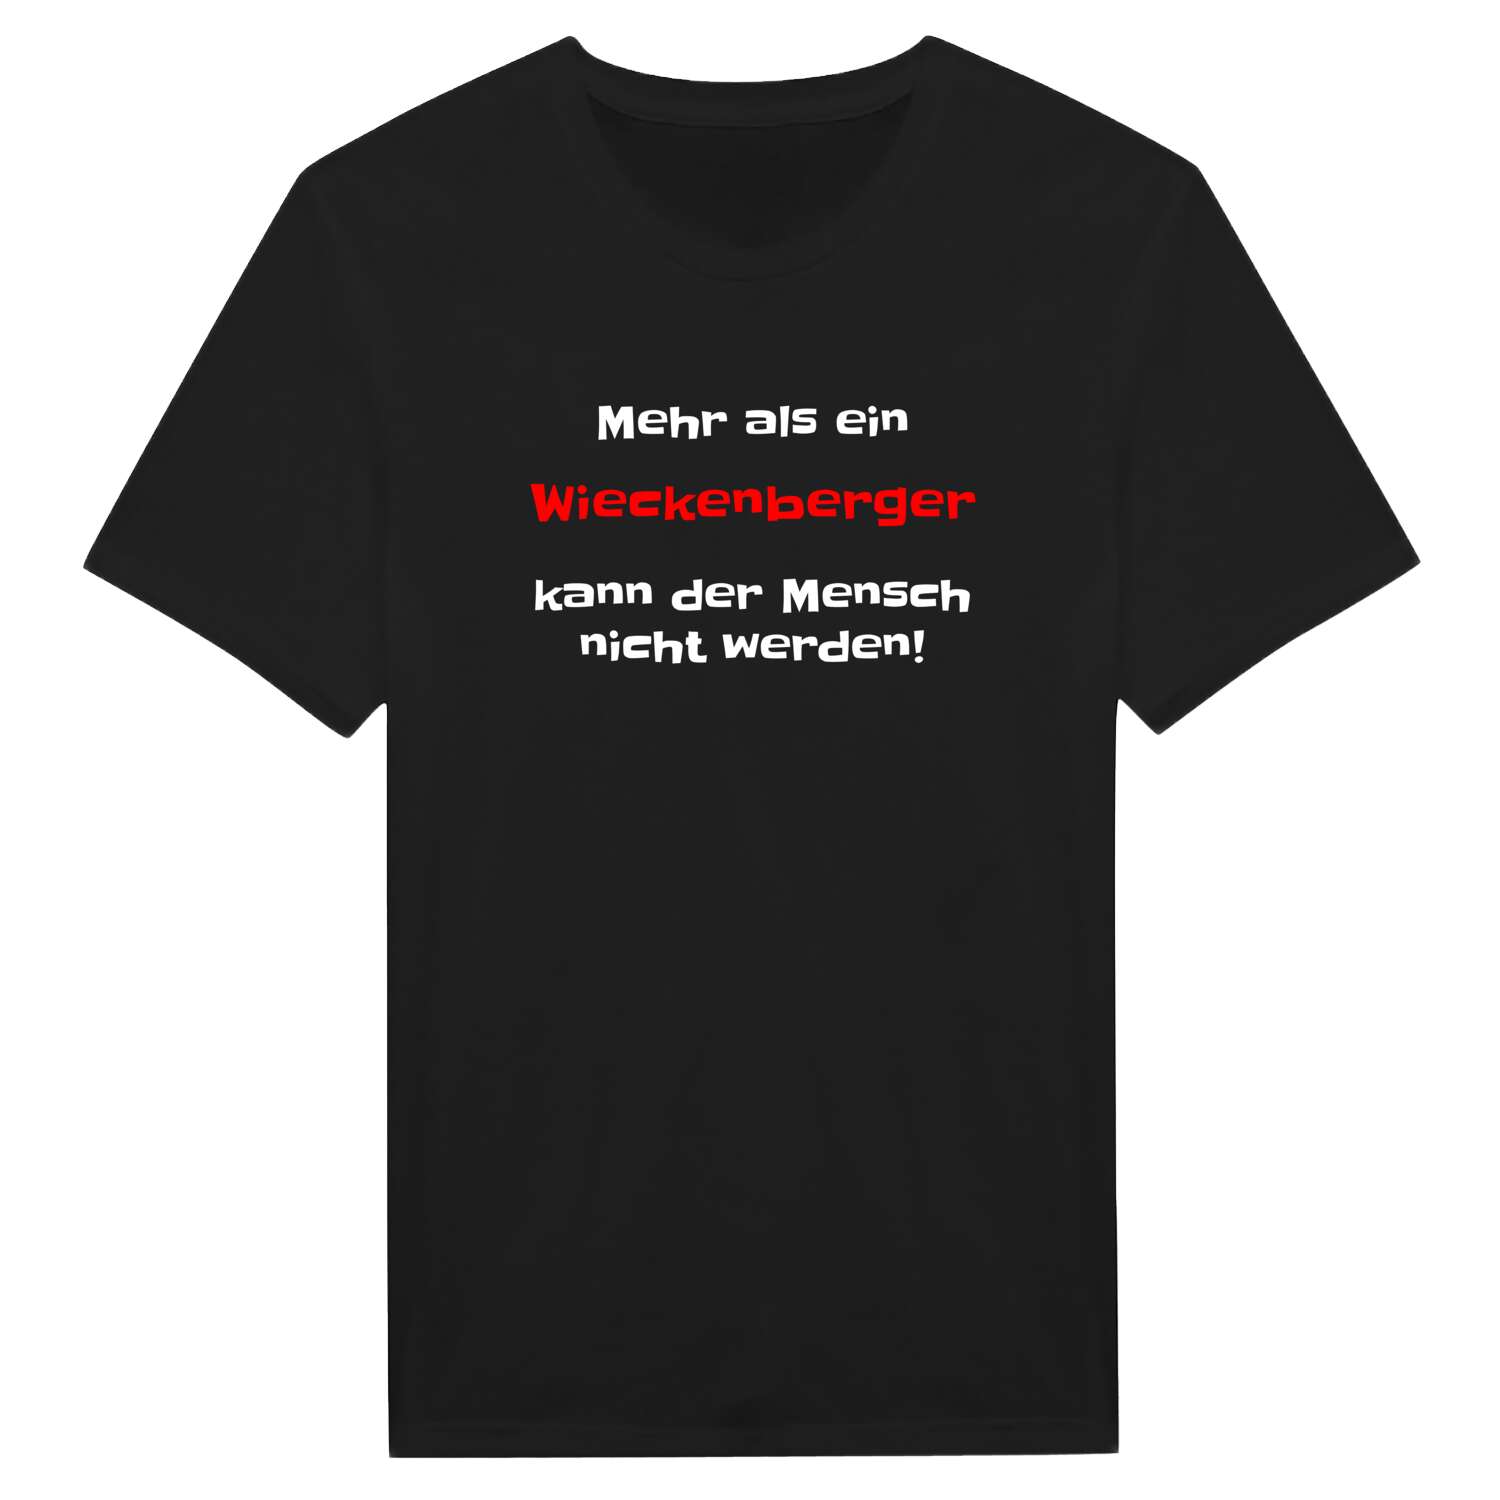 Wieckenberg T-Shirt »Mehr als ein«